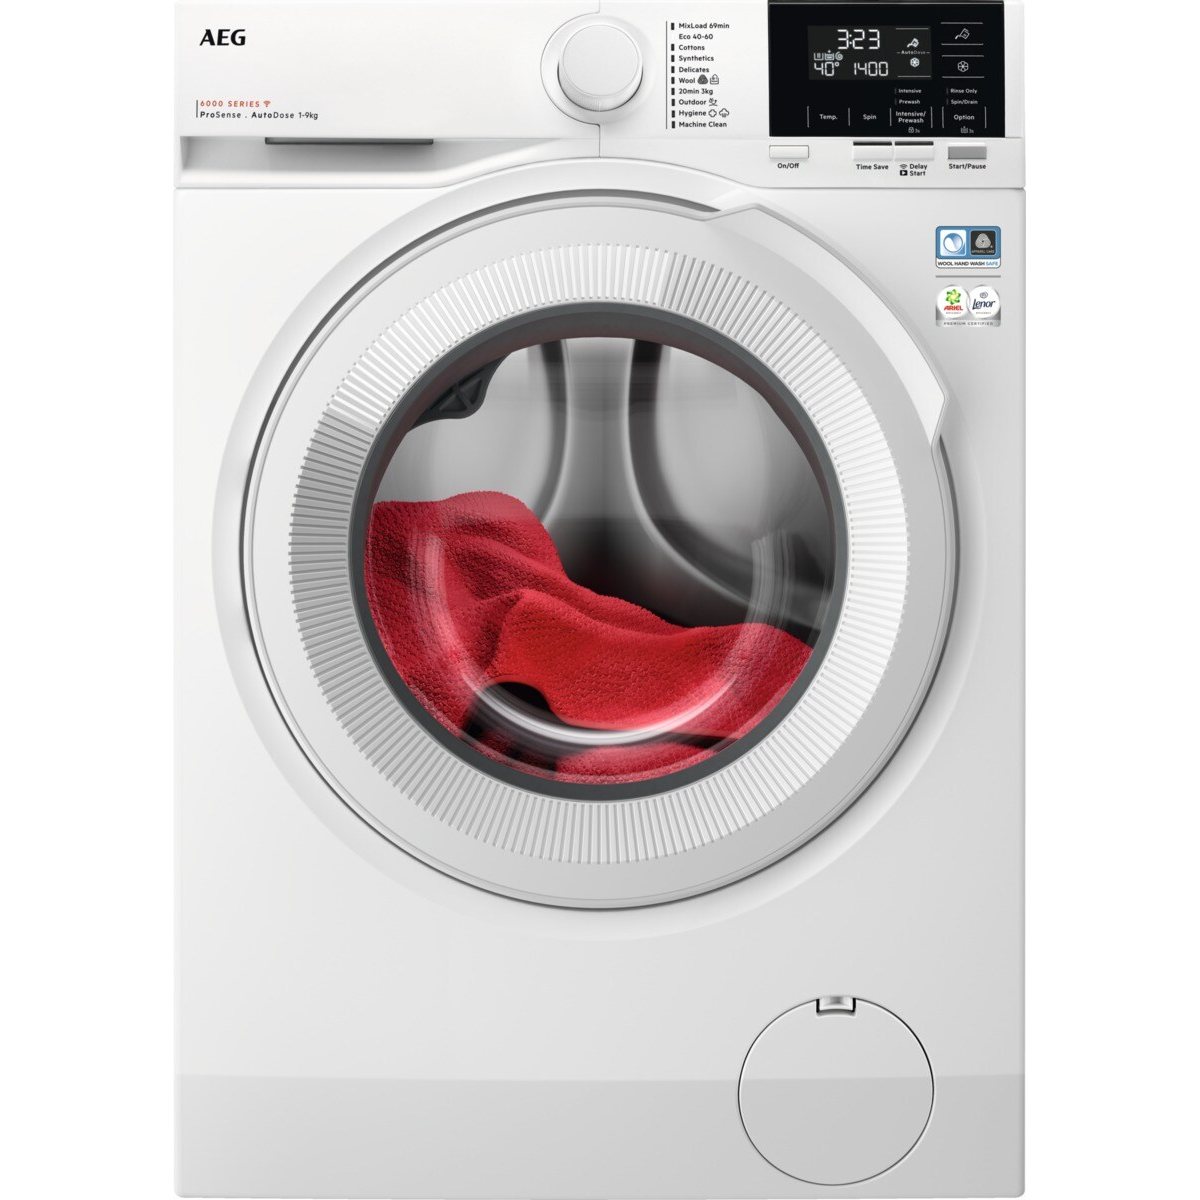 7332543979240 AEG LR622A94Q - Frontbetjent vaskemaskine med AutoDose Hvidevarer,Vaskemaskine,Frontbetjente vaskemaskiner 1100005510 LR622A94Q